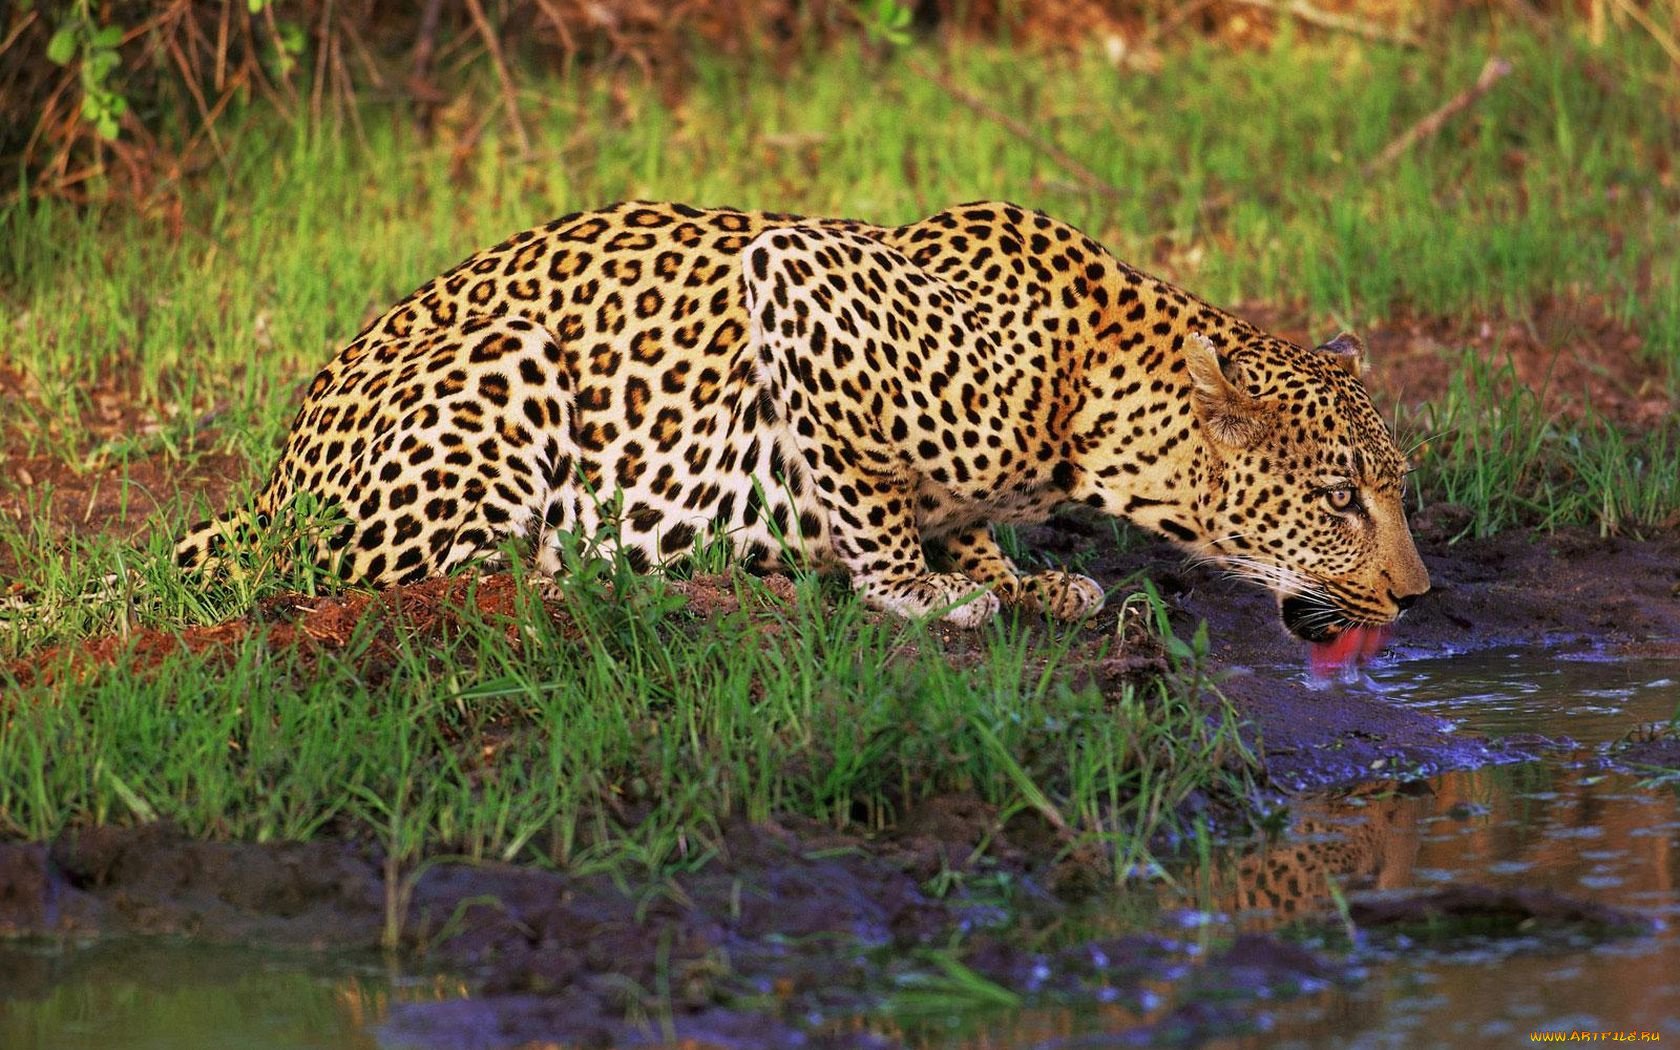 Статья диких животных. Леопард в субтропиках. Животные субтропиков. Дикие звери. Леопарды в дикой природе.